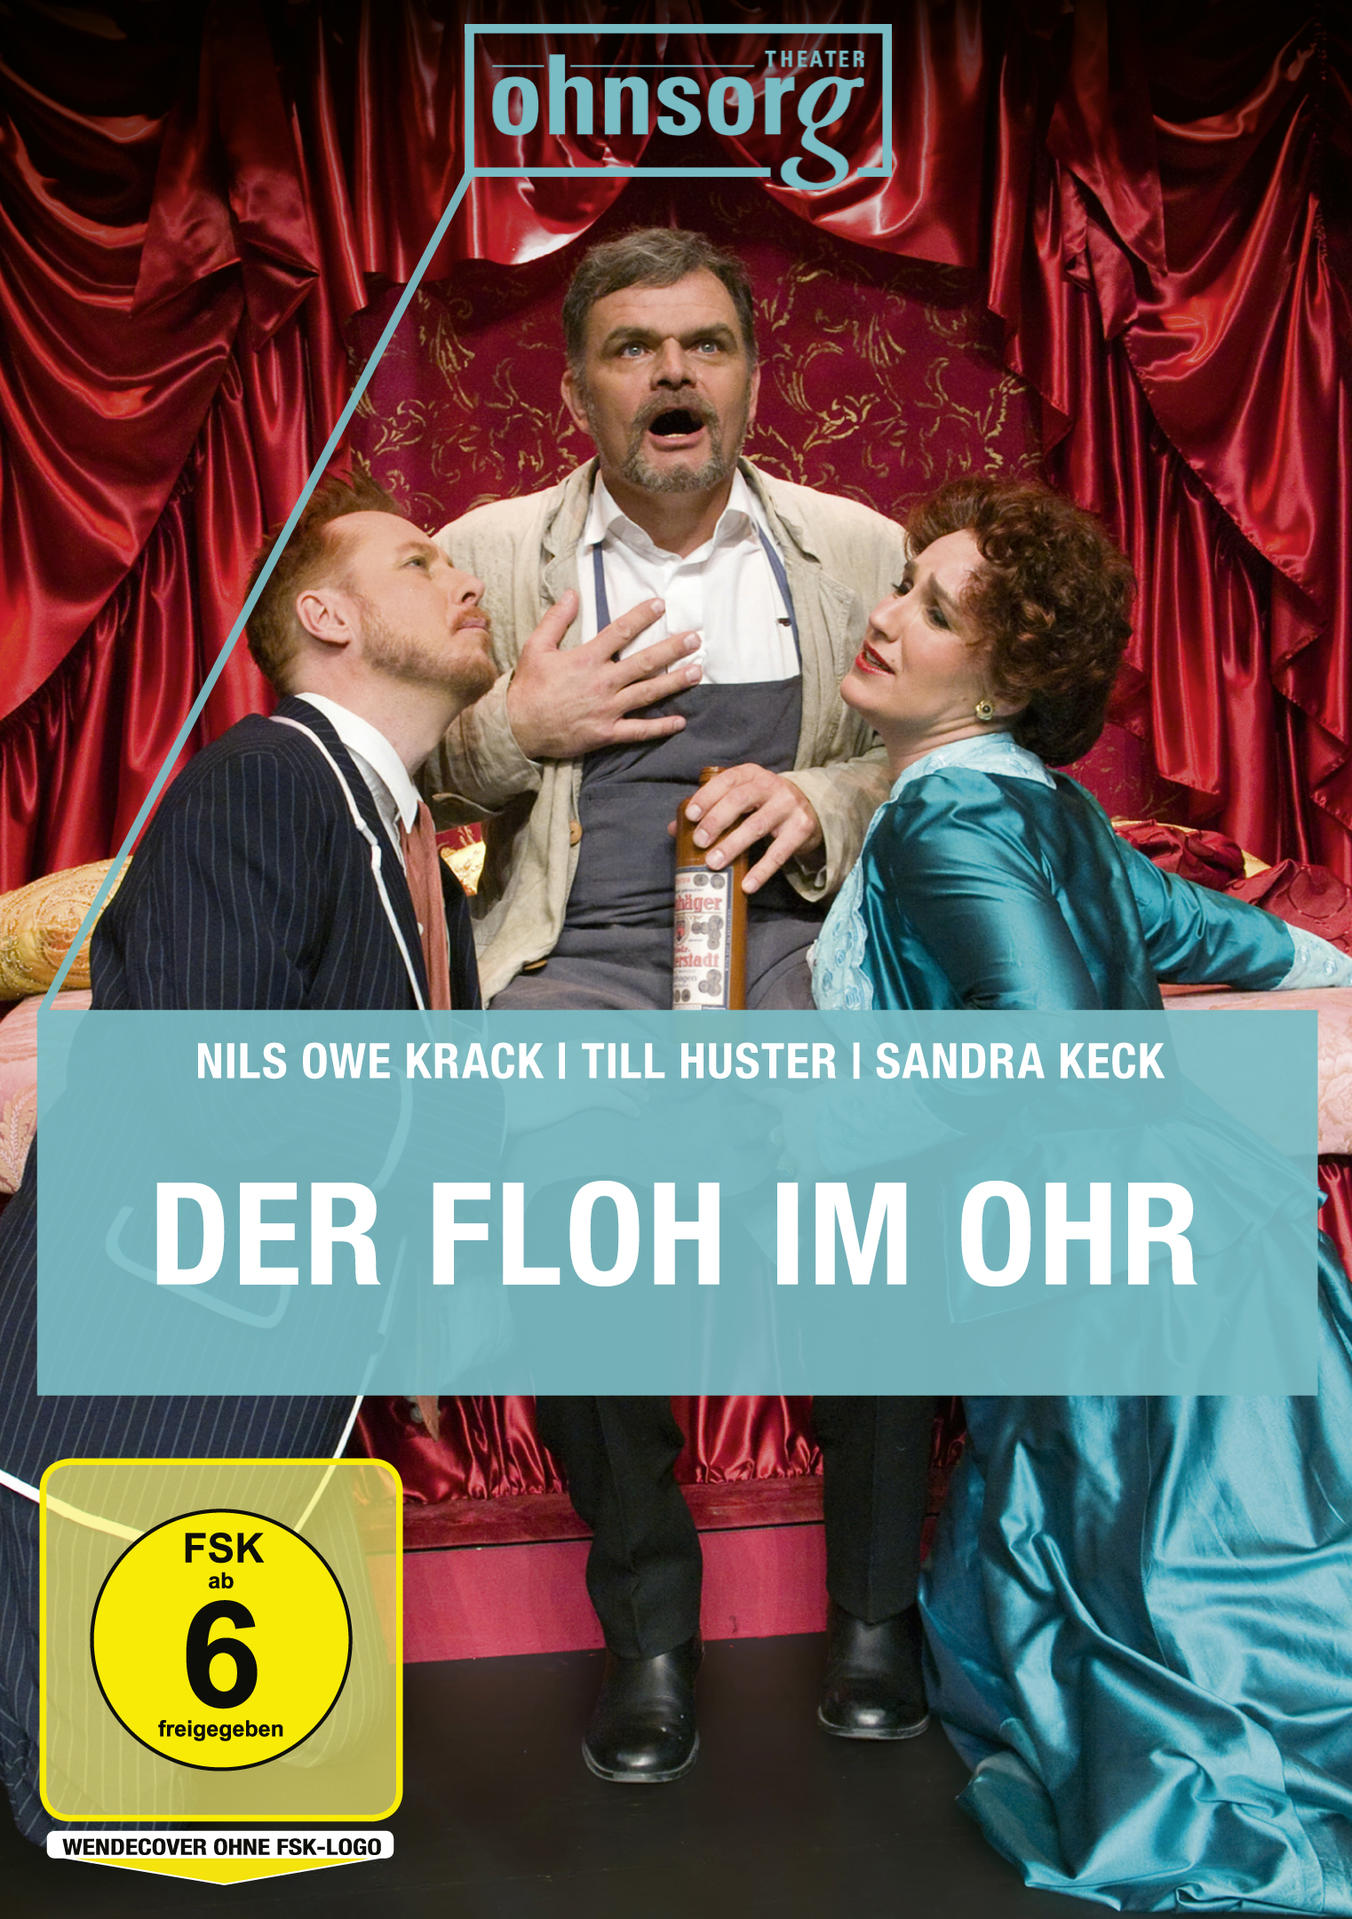 Ohnsorg-Theater DVD im heute: Der Ohr Floh